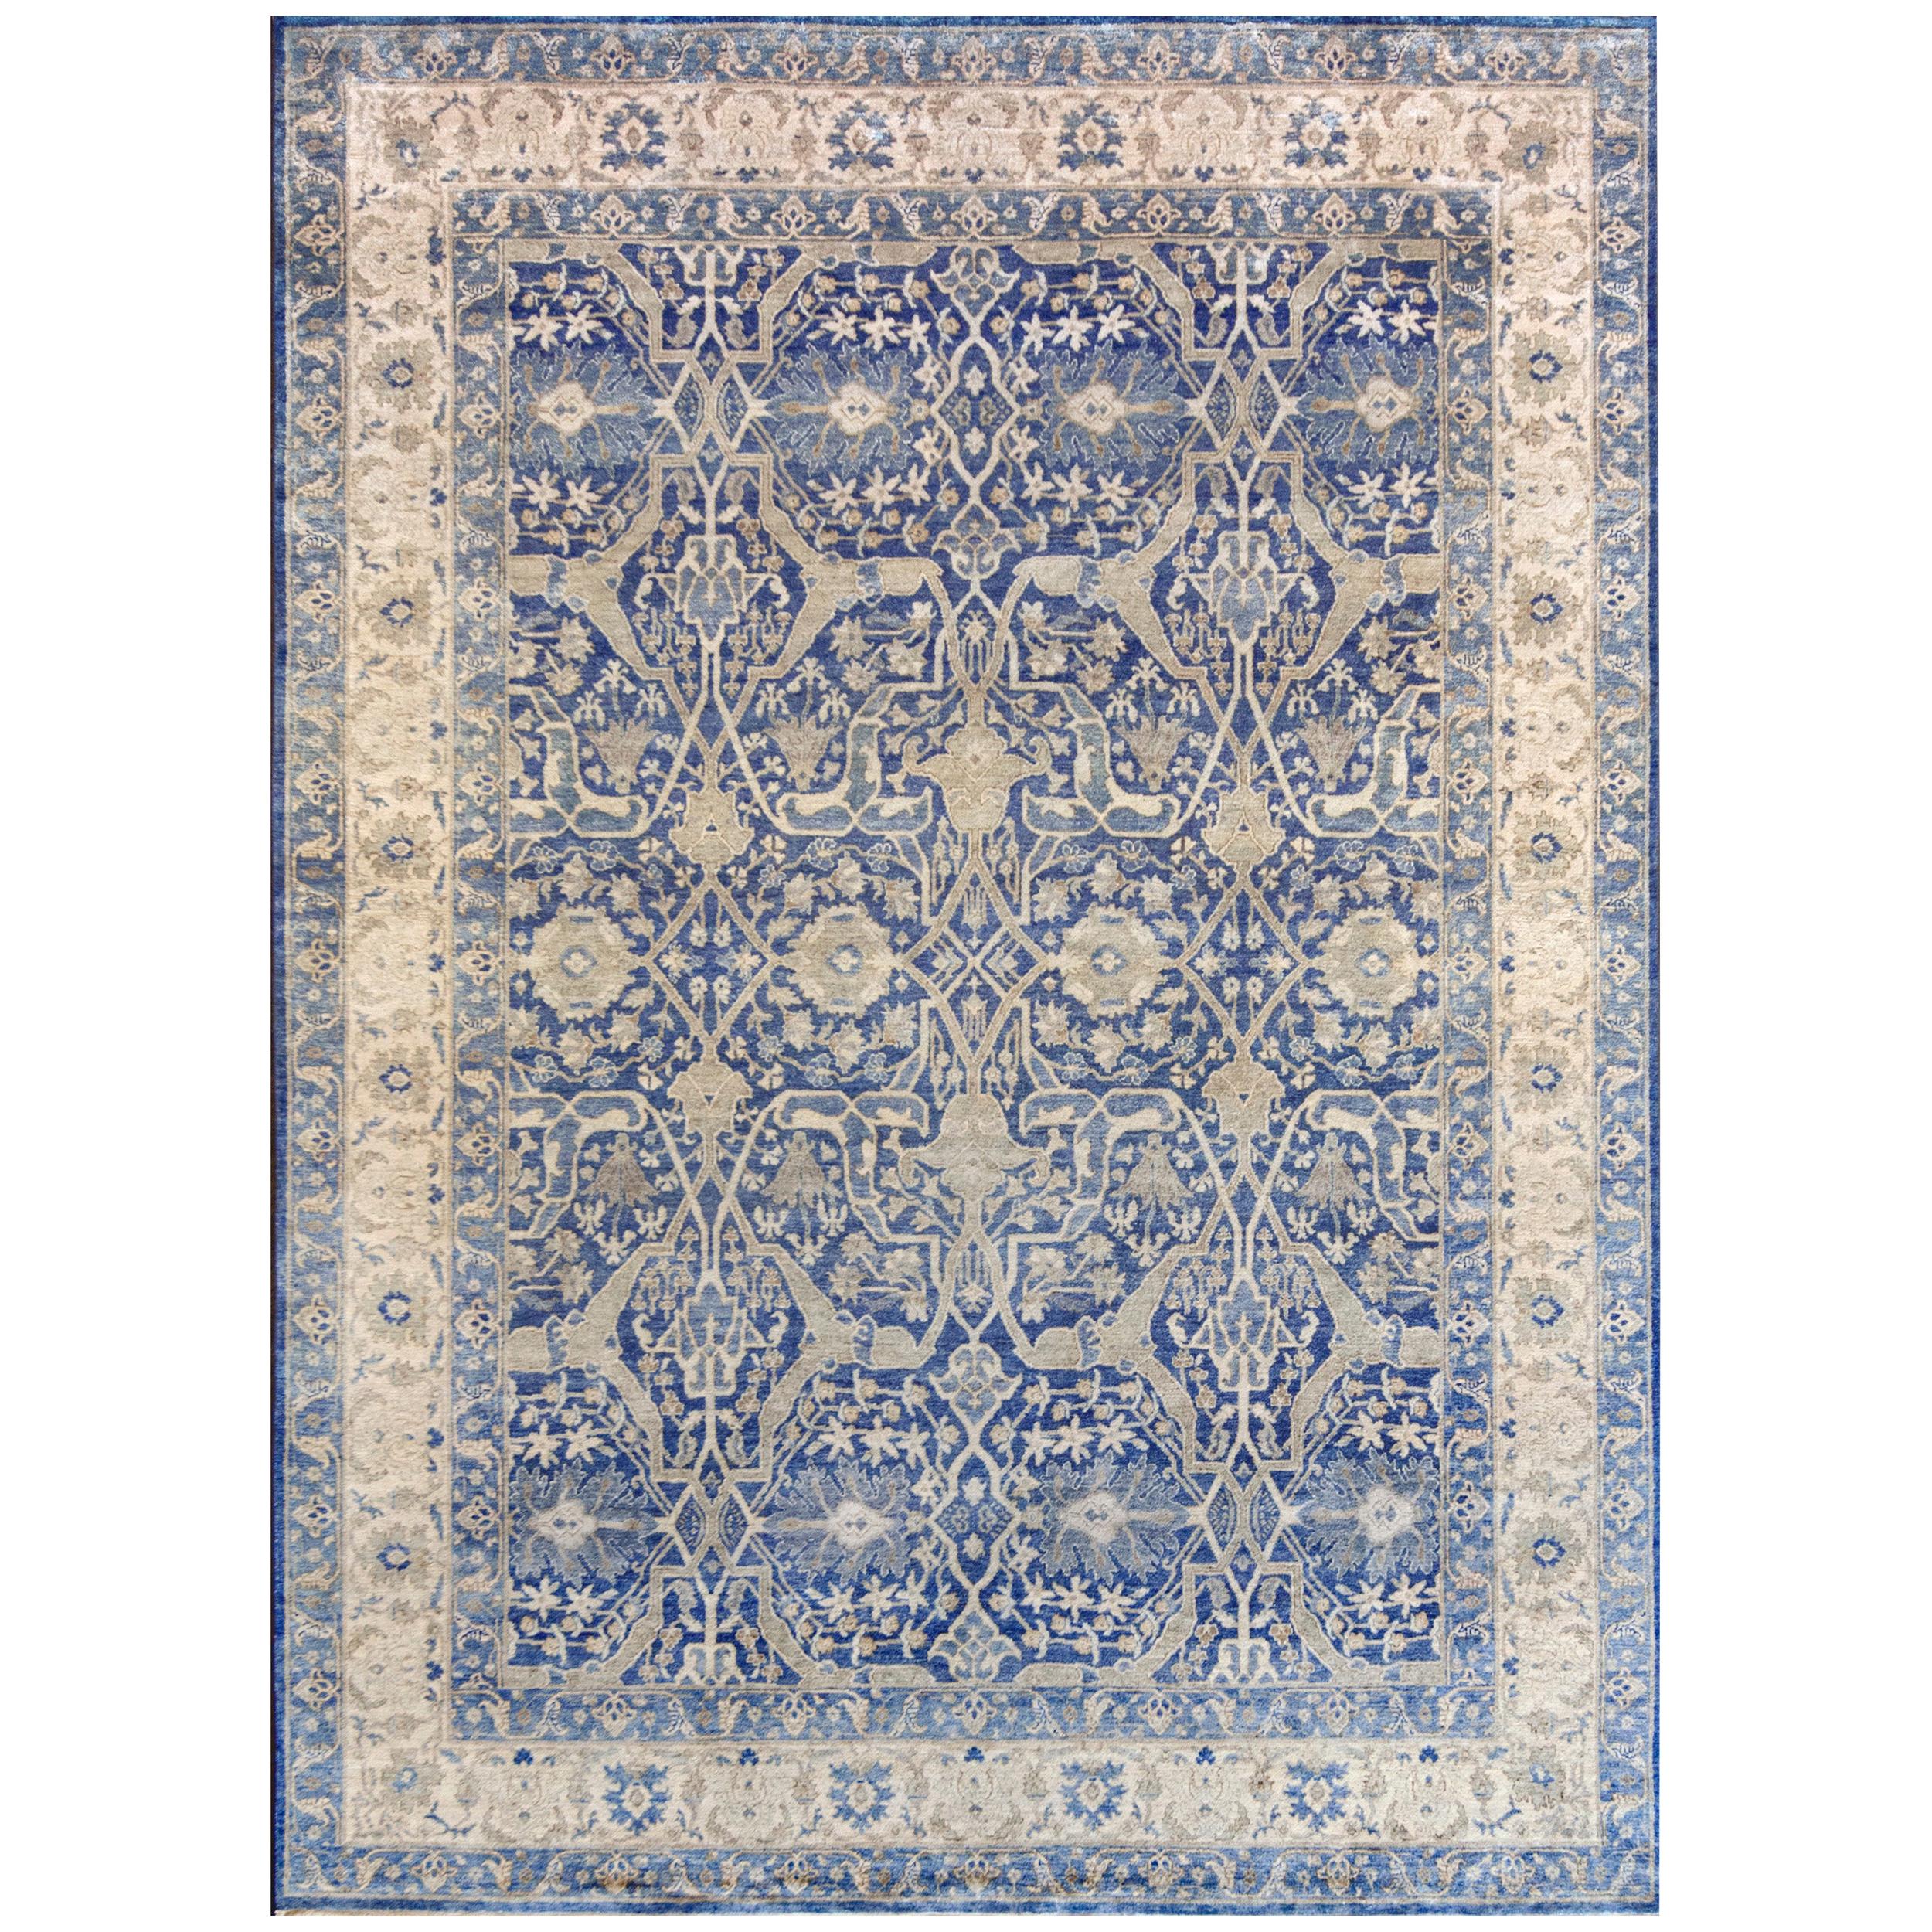 Ce tapis persan Tabriz en soie tissé à la main présente un champ bleu royal ombragé avec un motif général de vignes audacieuses brun sable et ivoire reliant des palmettes et de délicates vignes florales et feuillues, dans une bordure ivoire de